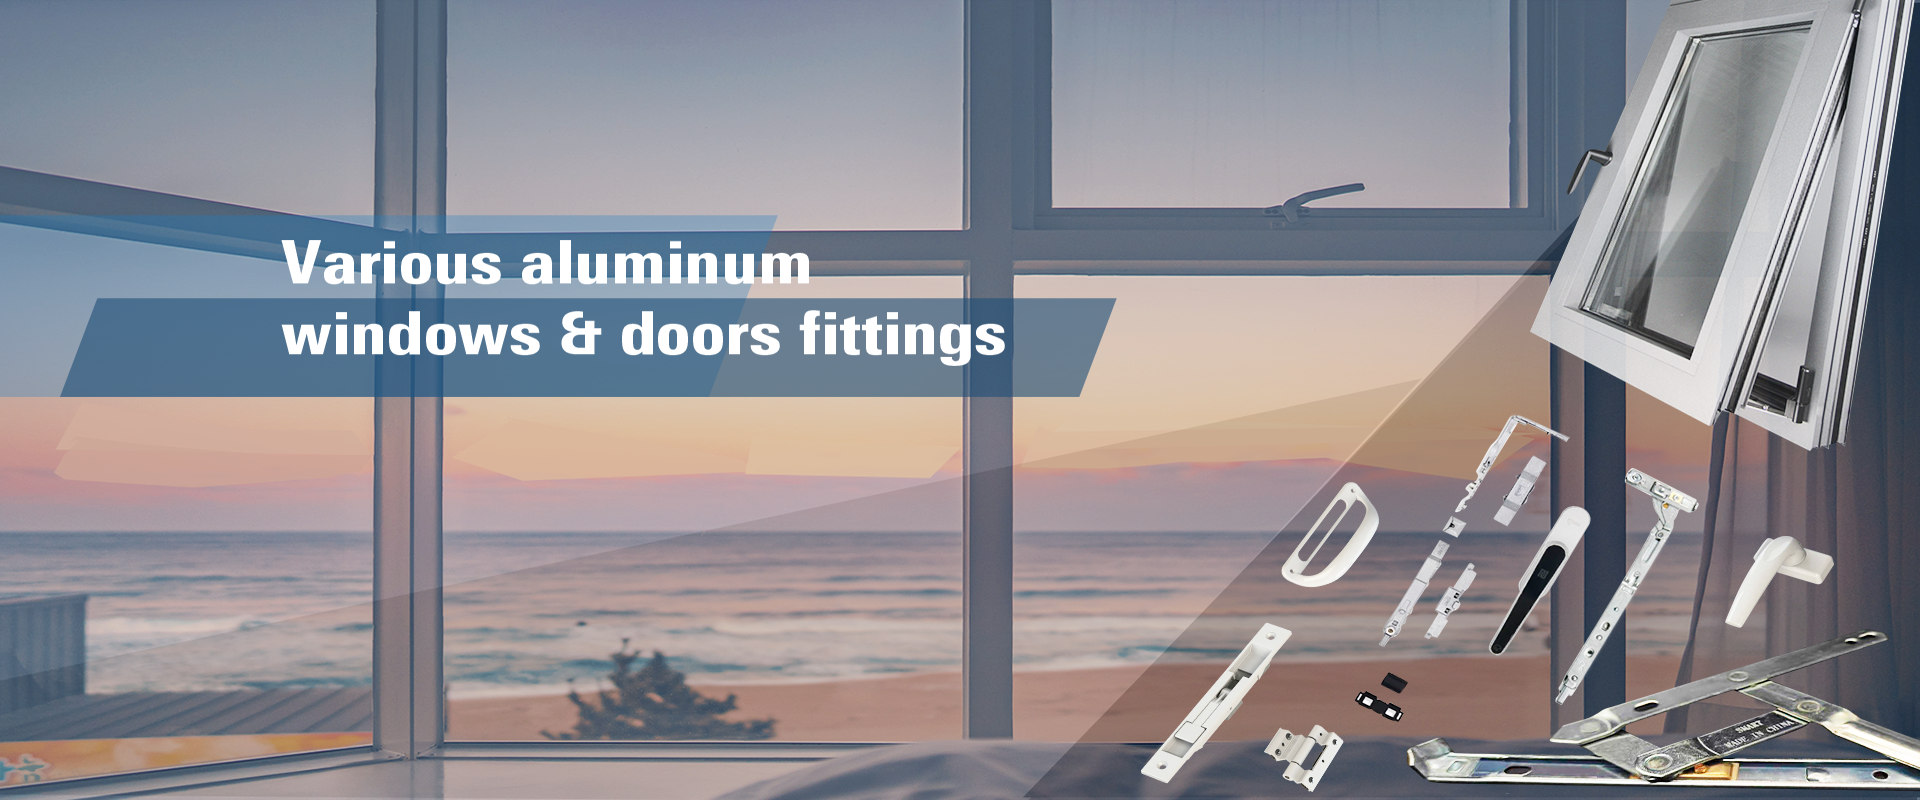 aluminum window and door accessories